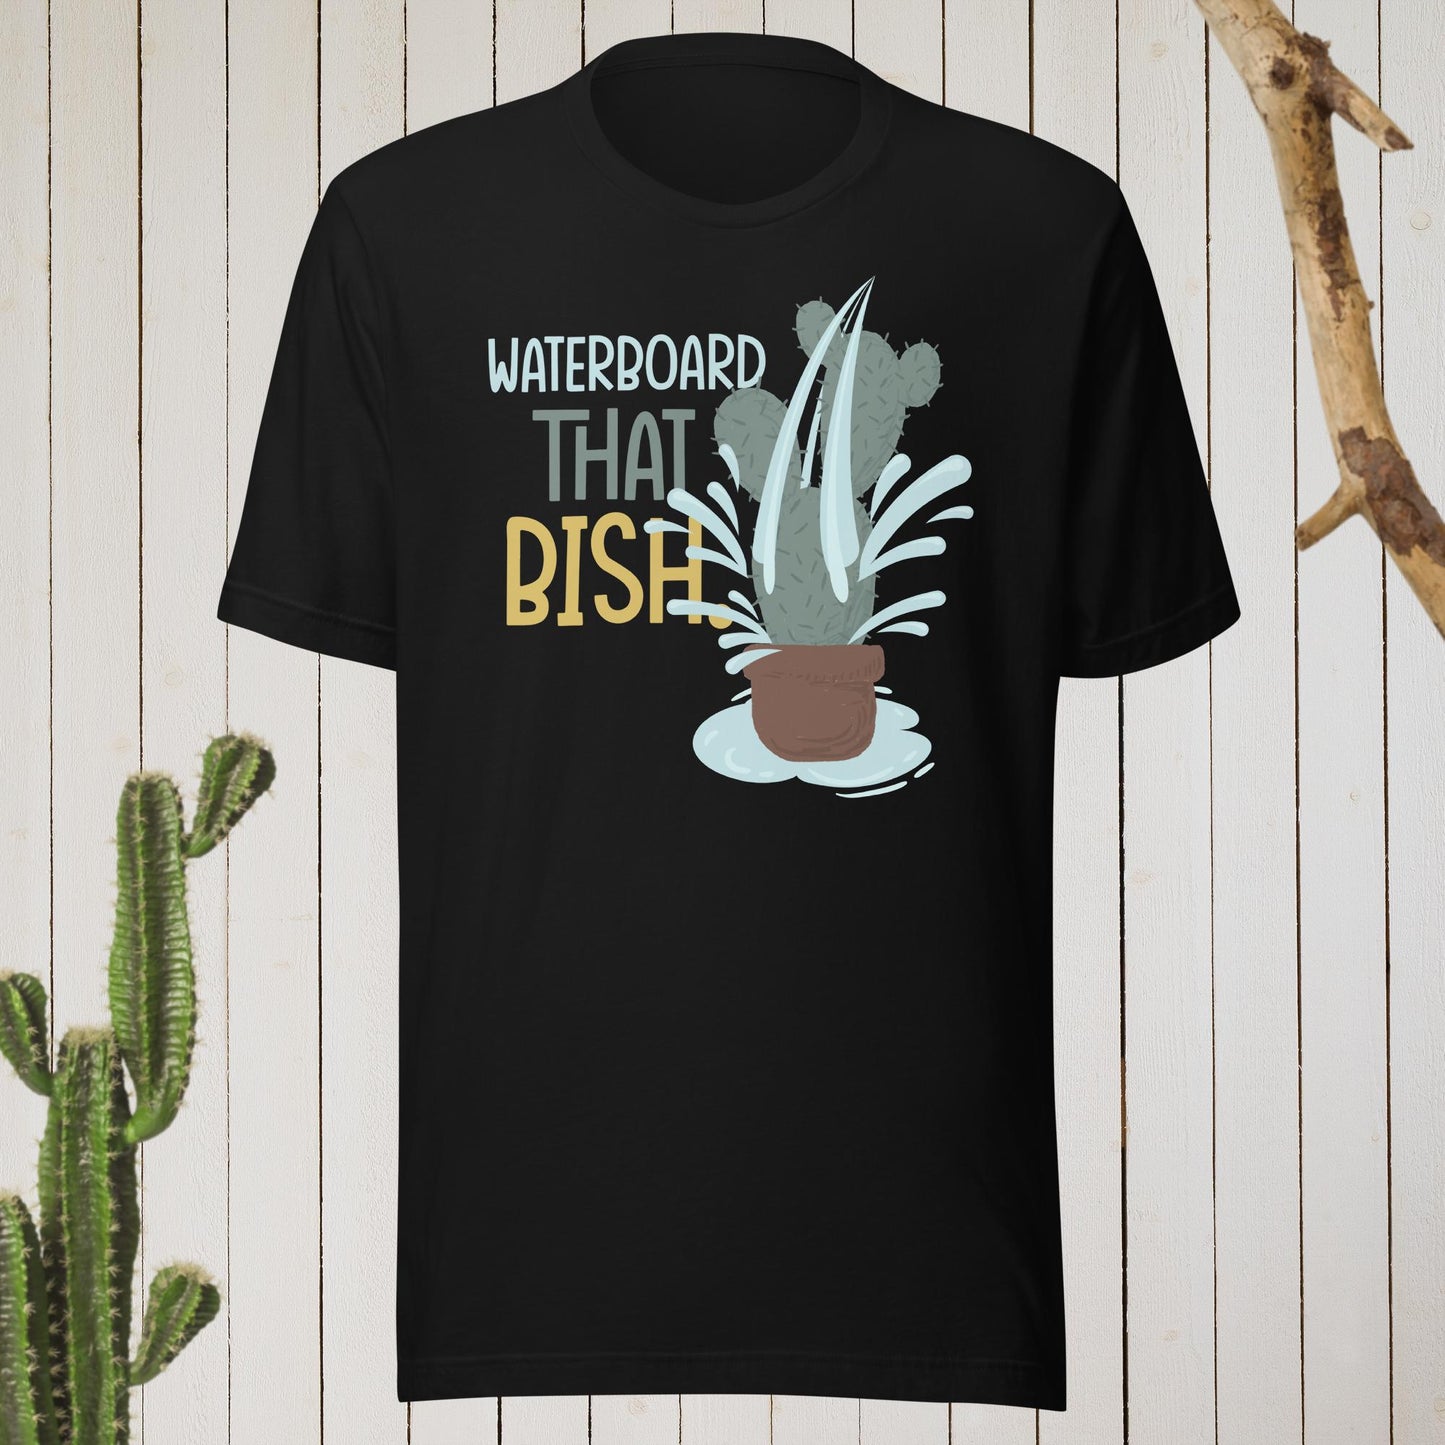 Waterboard that bish T-shirt